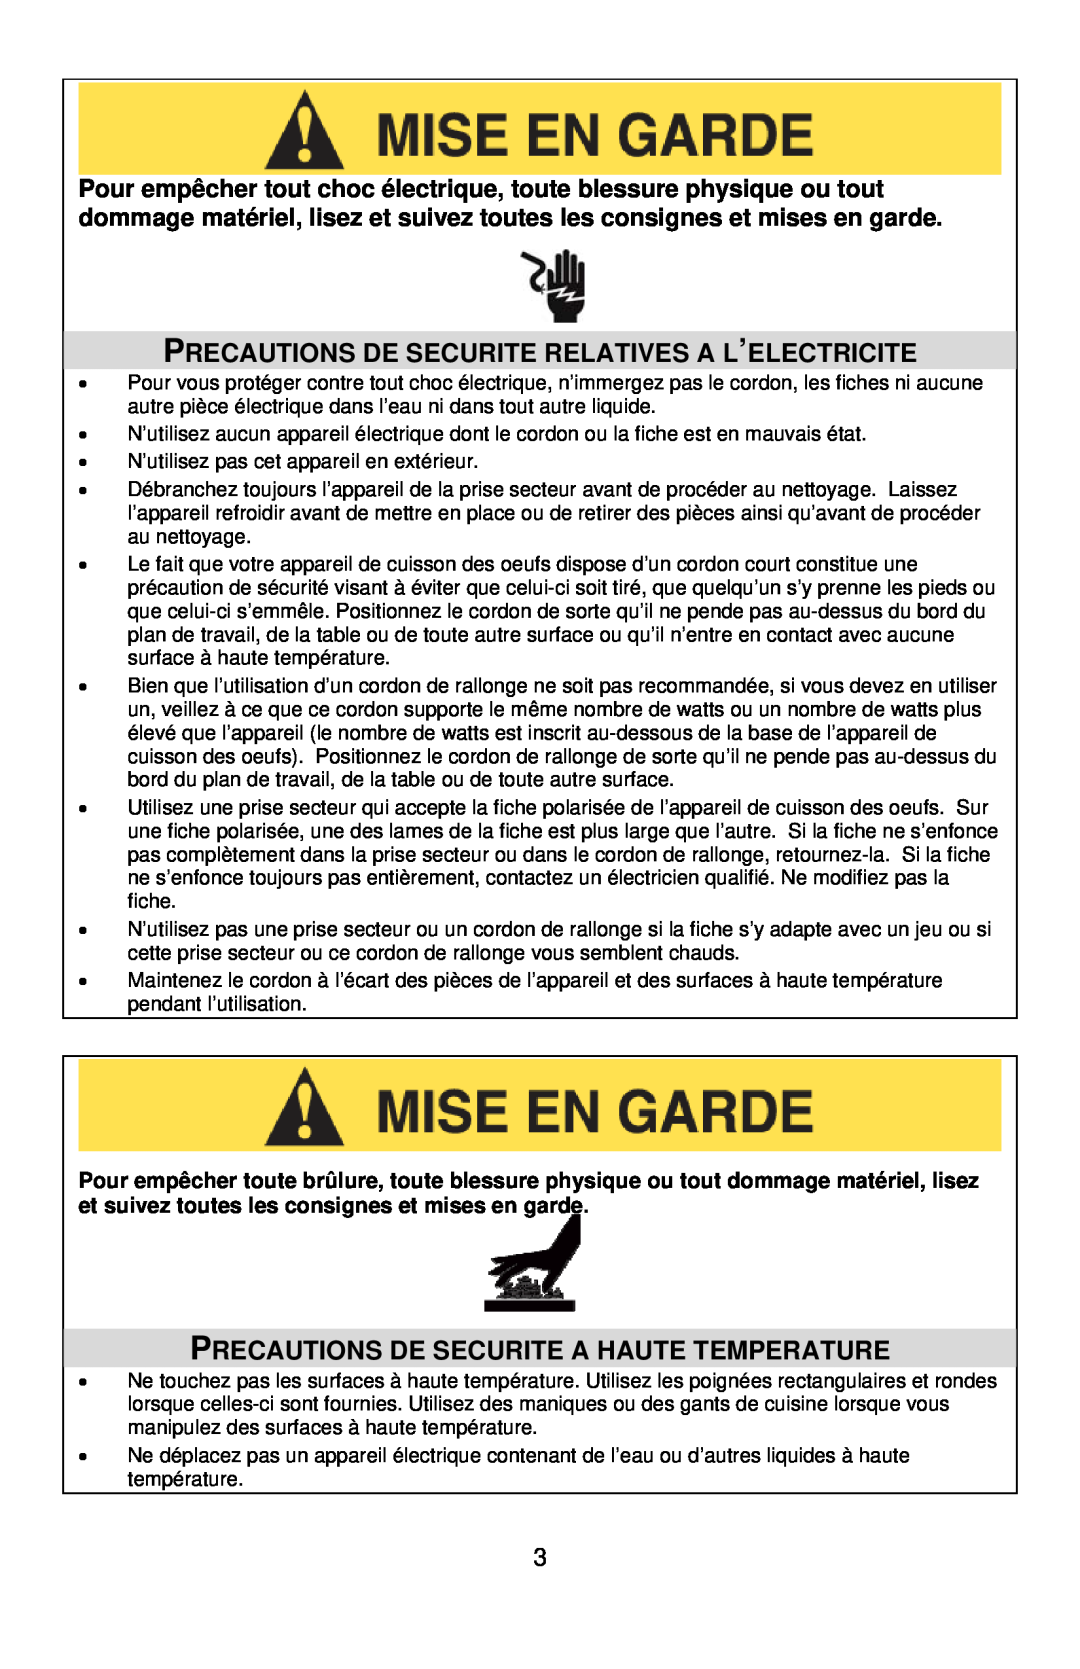 West Bend Automatic Egg Cooker instruction manual Precautions De Securite Relatives A L’Electricite 